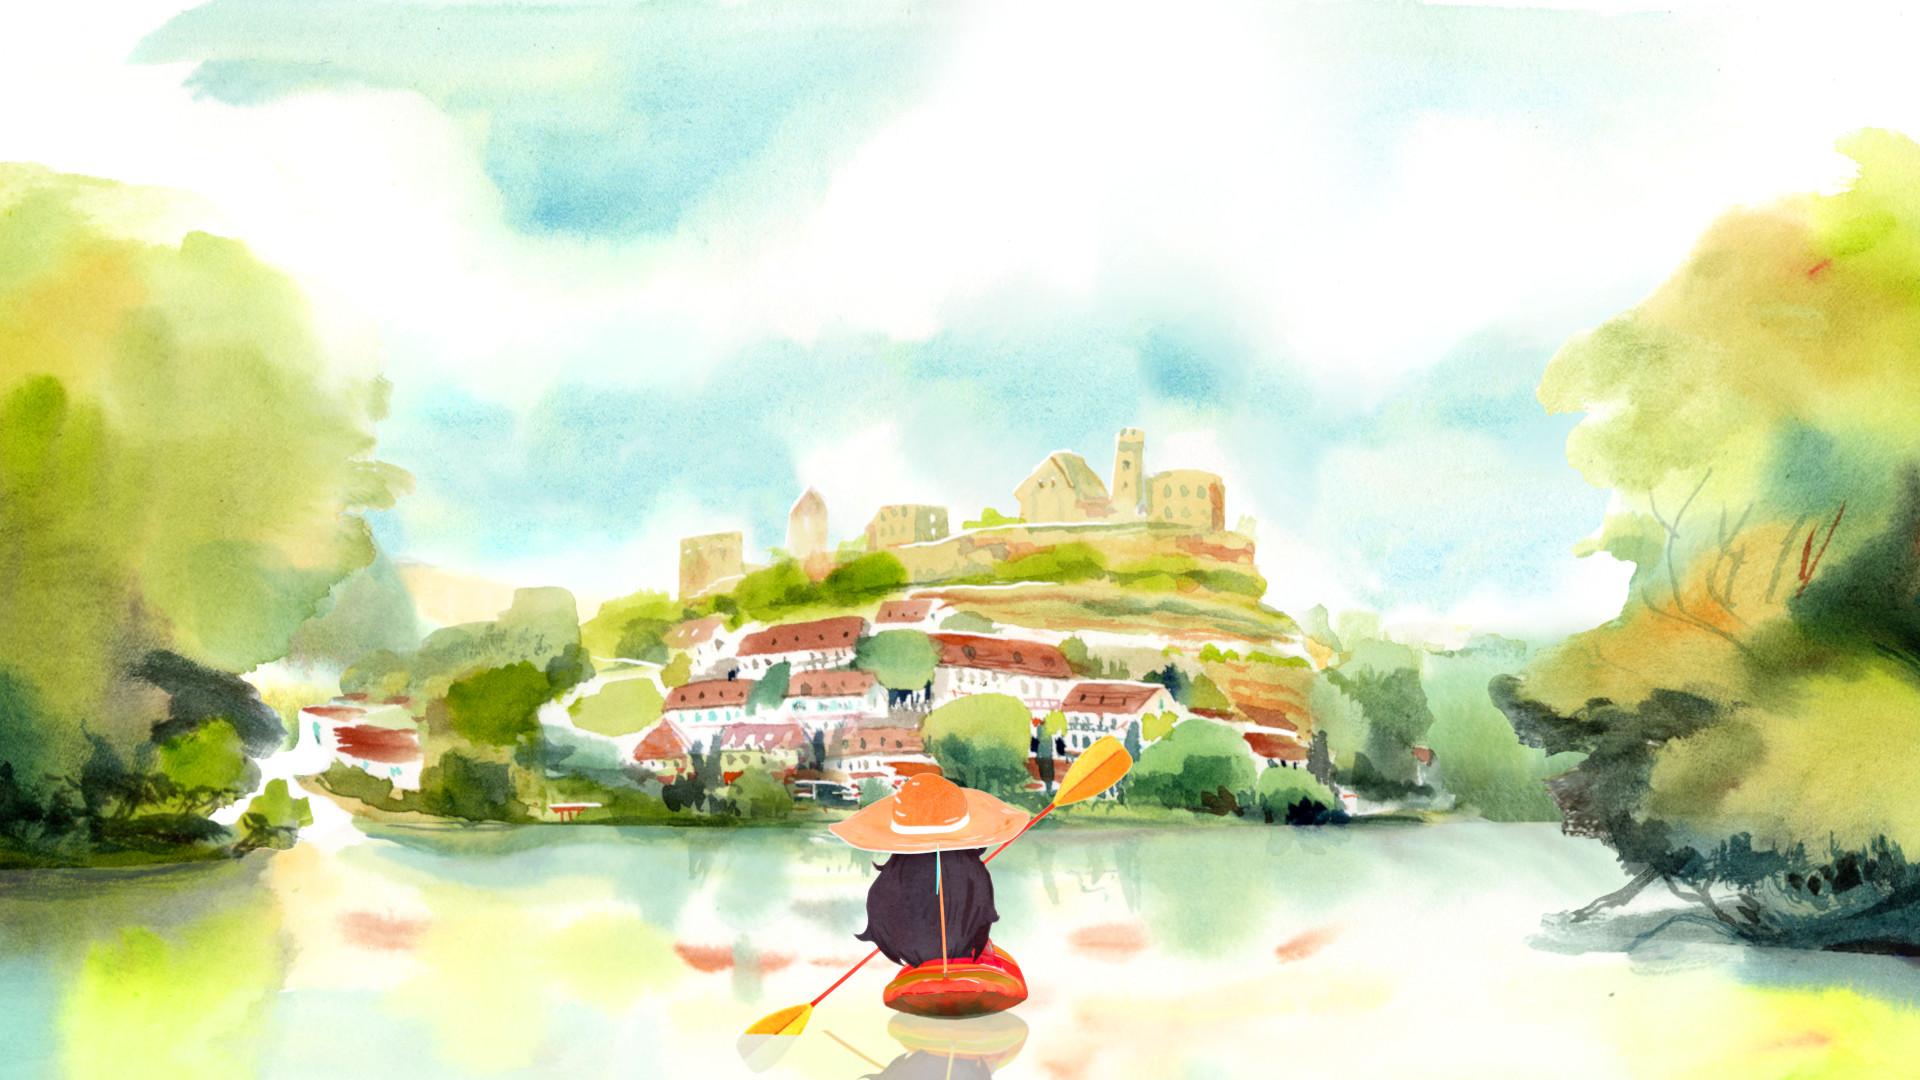 Dordogne – Tựa game đẹp như tranh vẽ với những cuộc phiêu lưu vào thế giới của màu nước